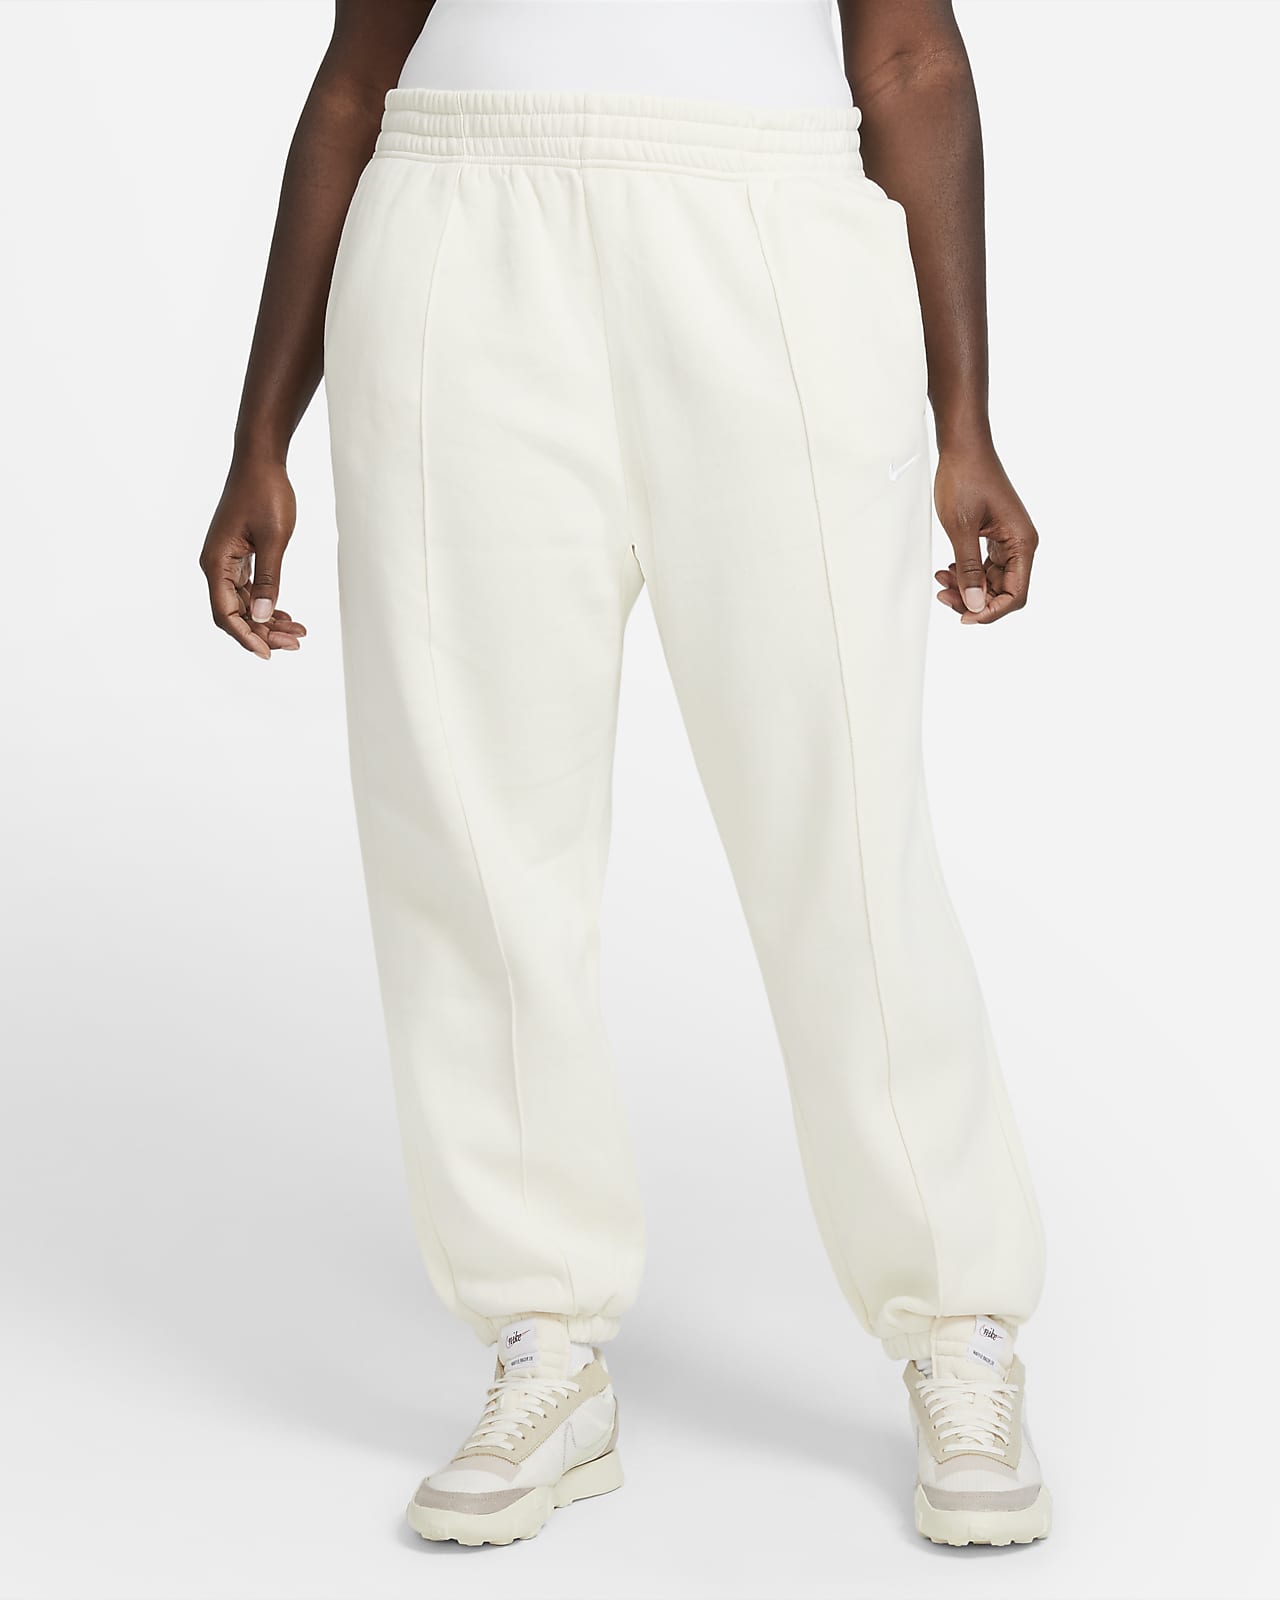 Pantalon en tissu Fleece Nike Sportswear Trend pour Femme (grande taille)